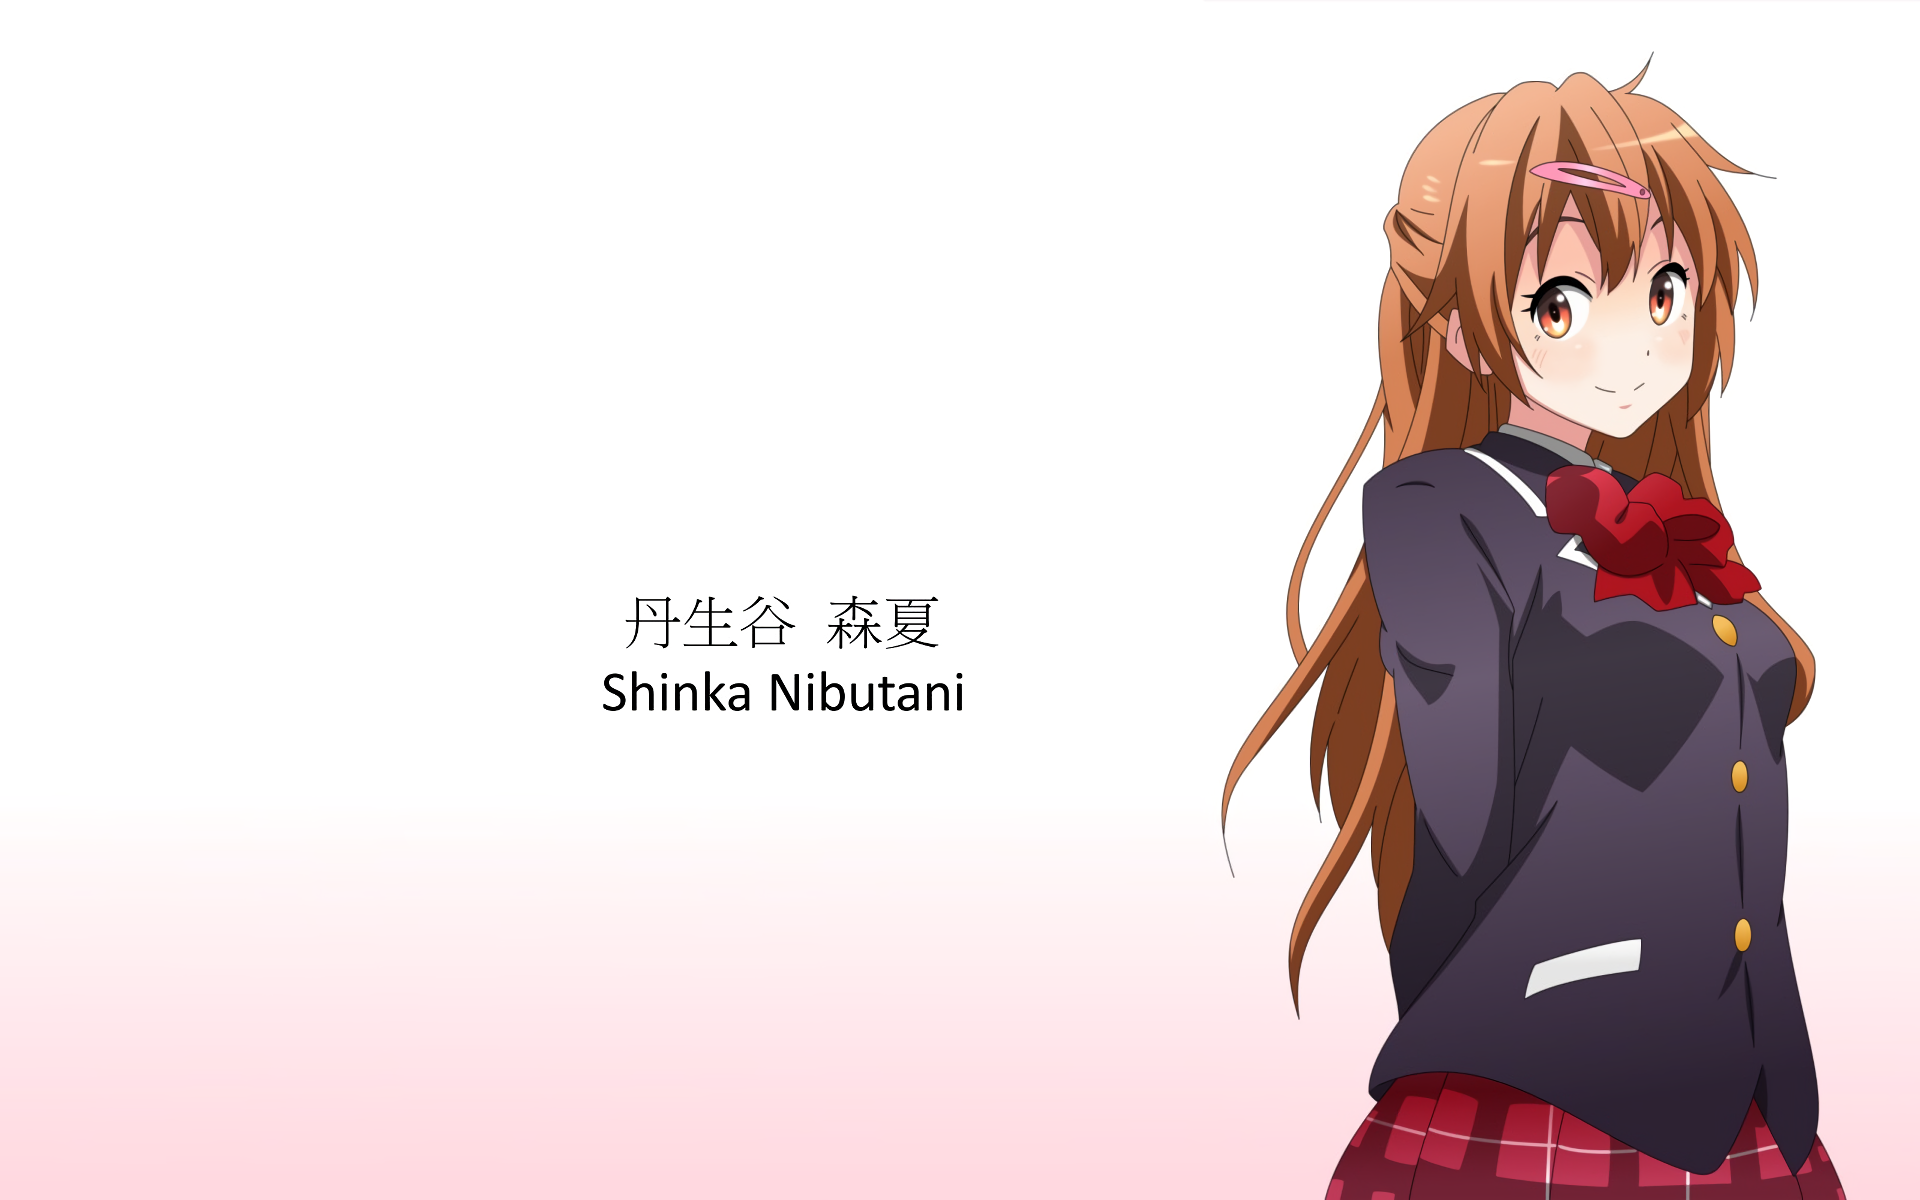 SHINKA NO MI : SHIRANAI UCHI NI KACHIGUMI JINSEI EPISODE 1 SUB ENGLISH -  video Dailymotion